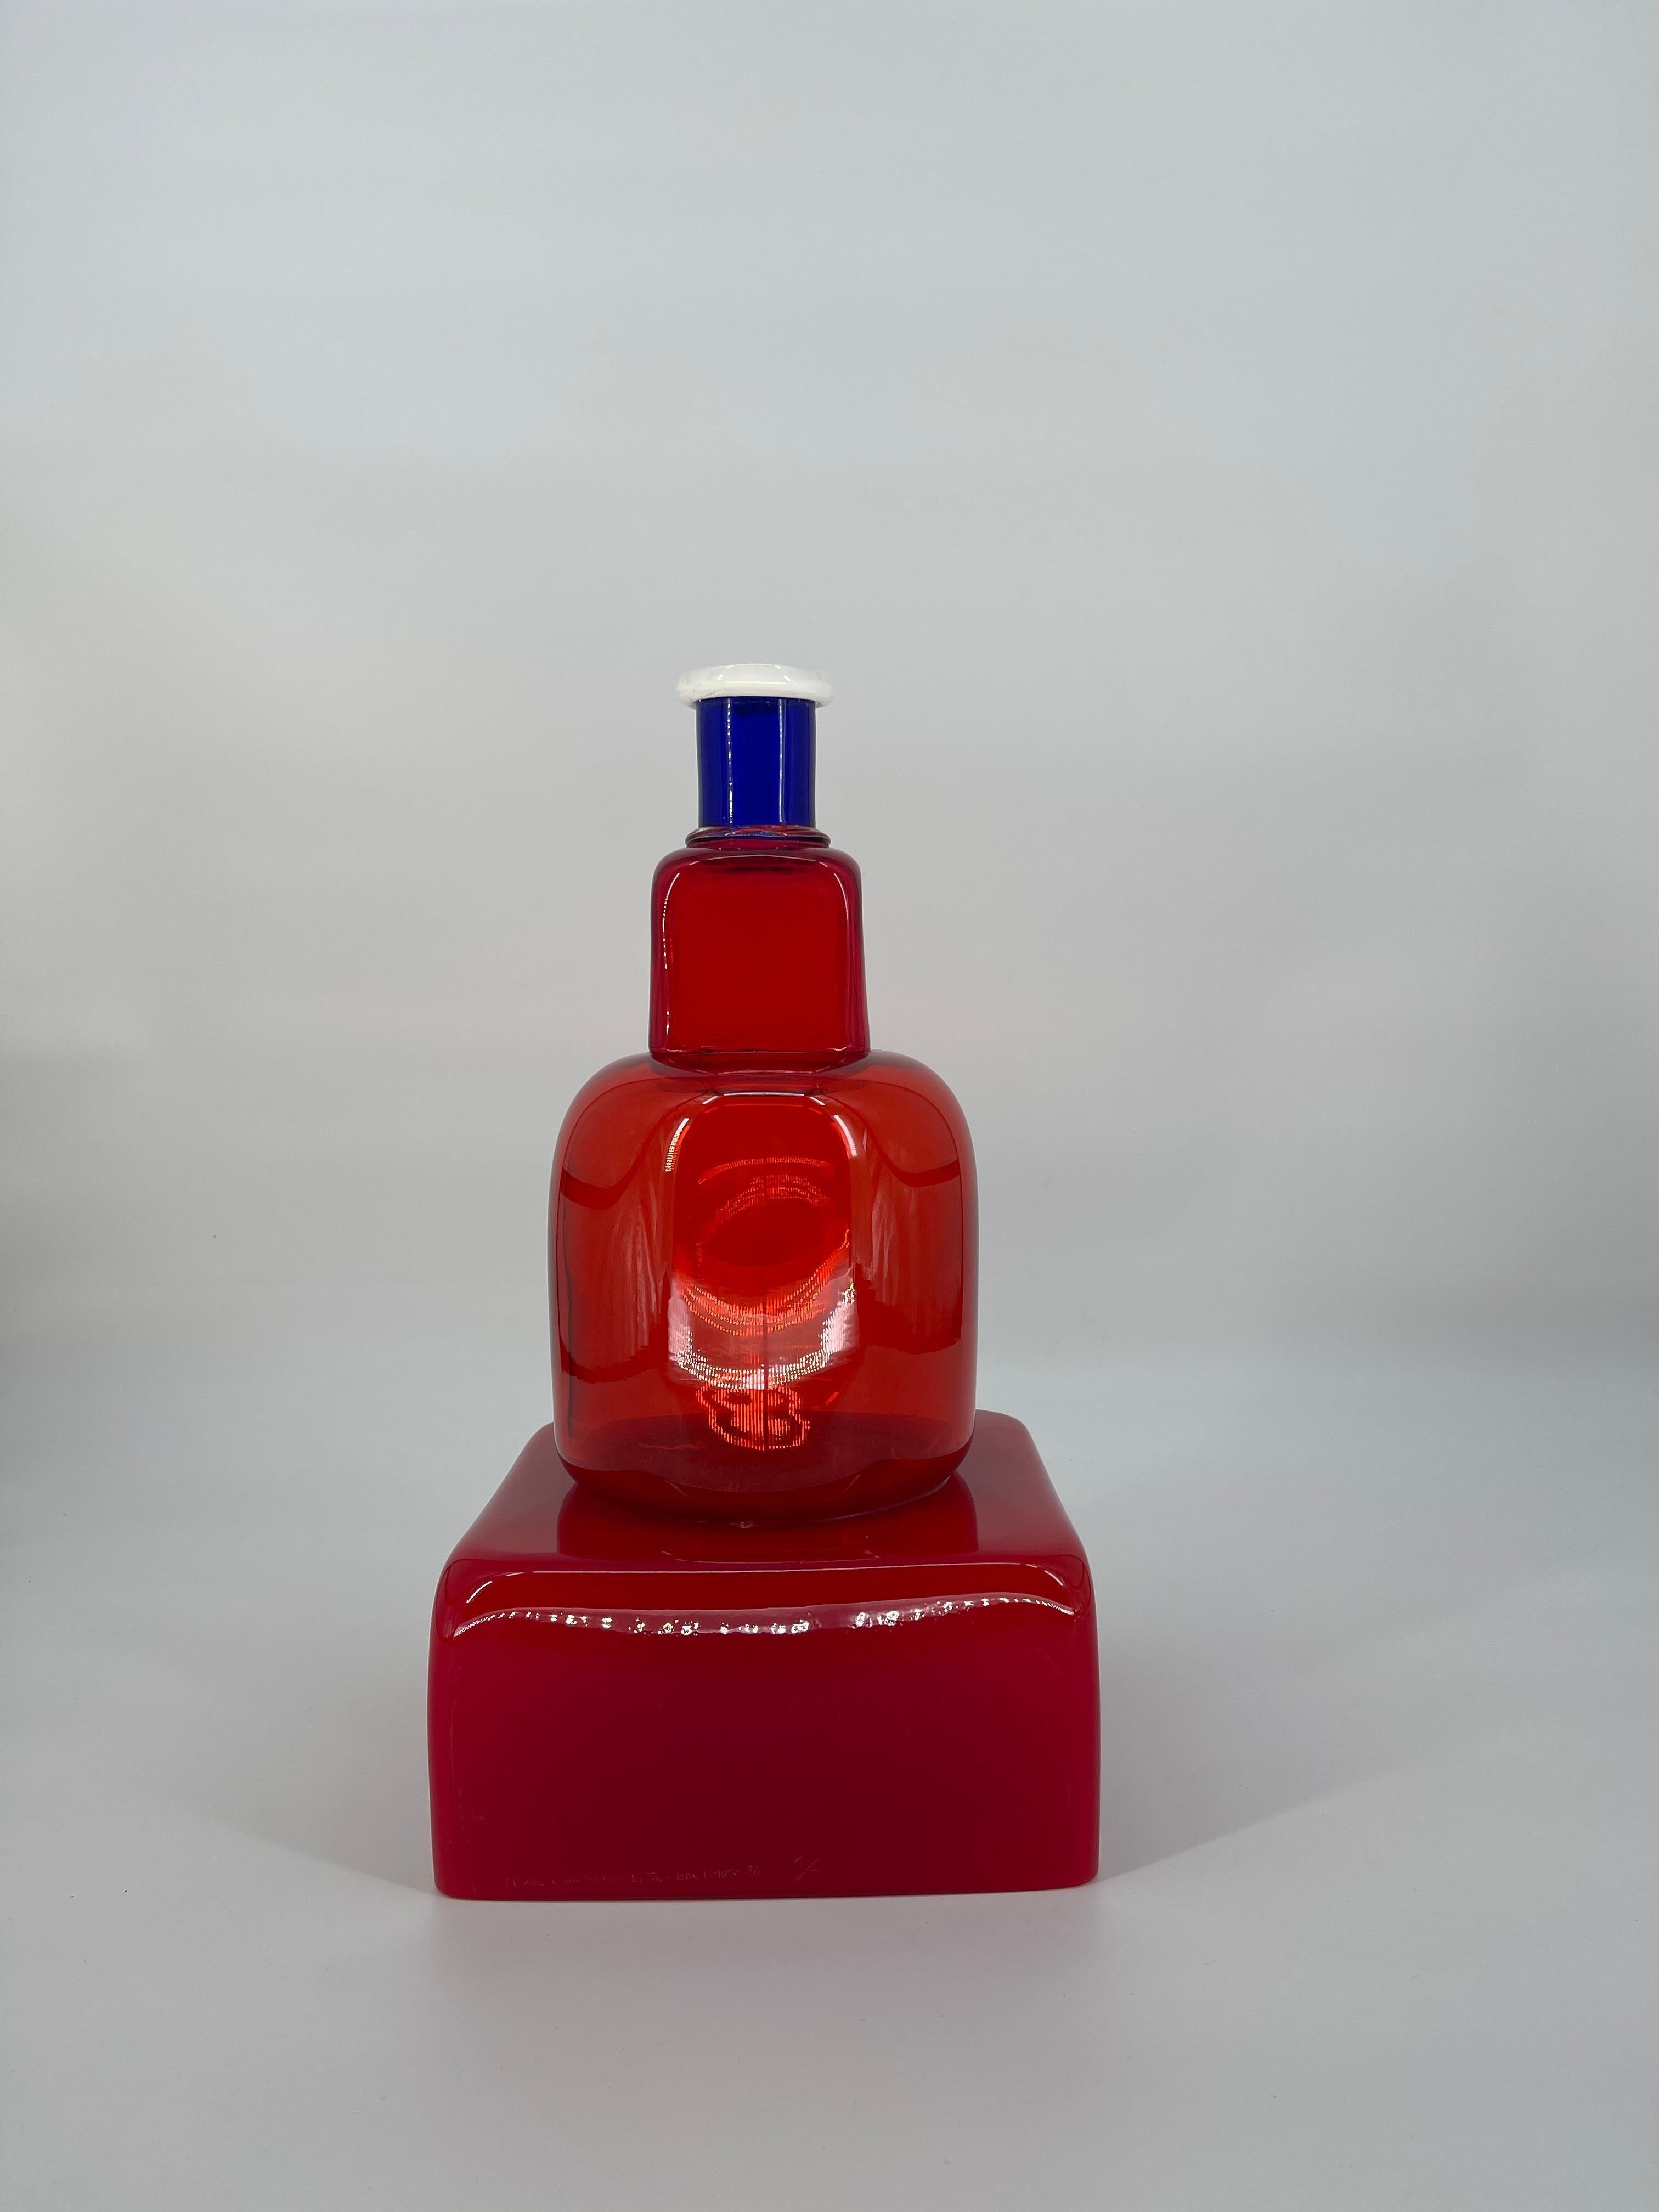 Marco Zanini pour Memphis, conçu en 1986
KITA, UN VASE EN VERRE ROUGE TRANSPARENT
Vase rouge en forme de pyramide avec détails blancs et bleus
Marque gravée de M. Zanini pour Memphis par Vetri d'arte Provo d'autore
Ce vase est le numéro 1 sur 7.